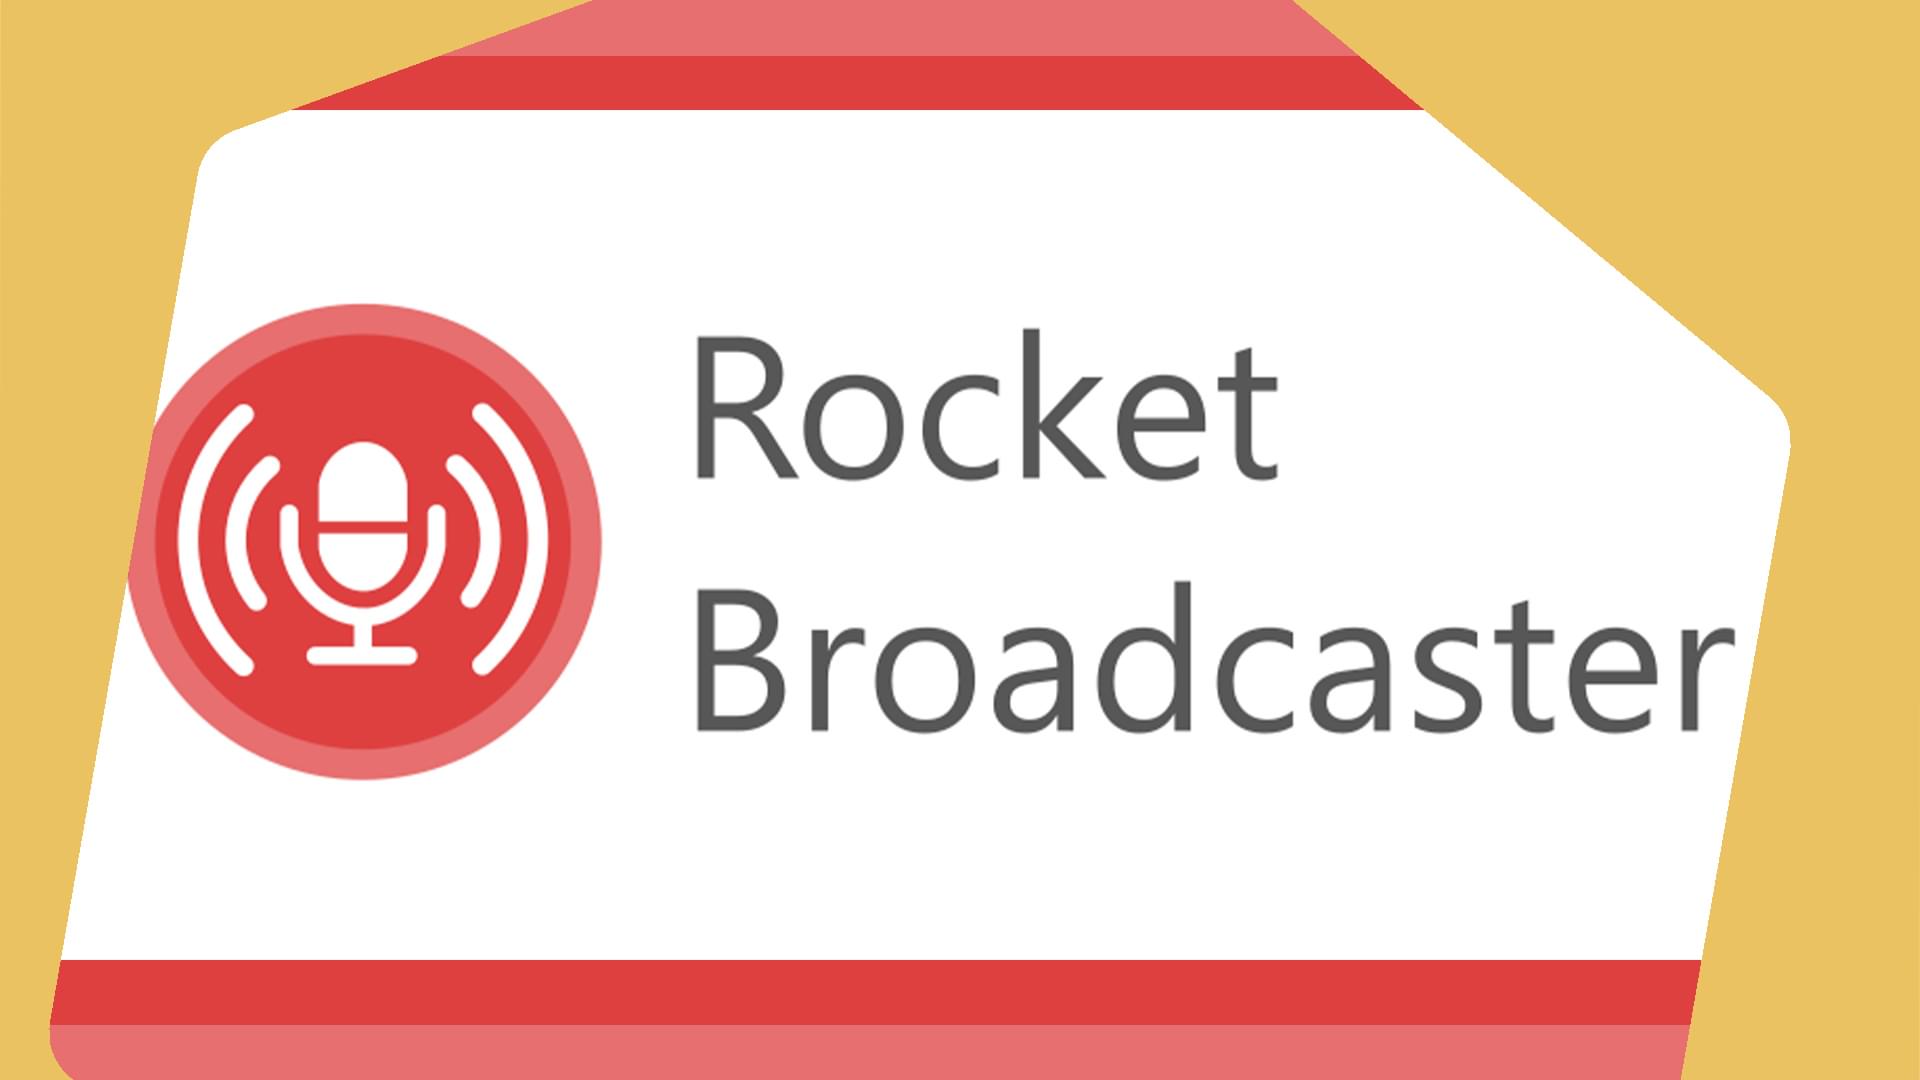 Rocket Broadcaster Header Image